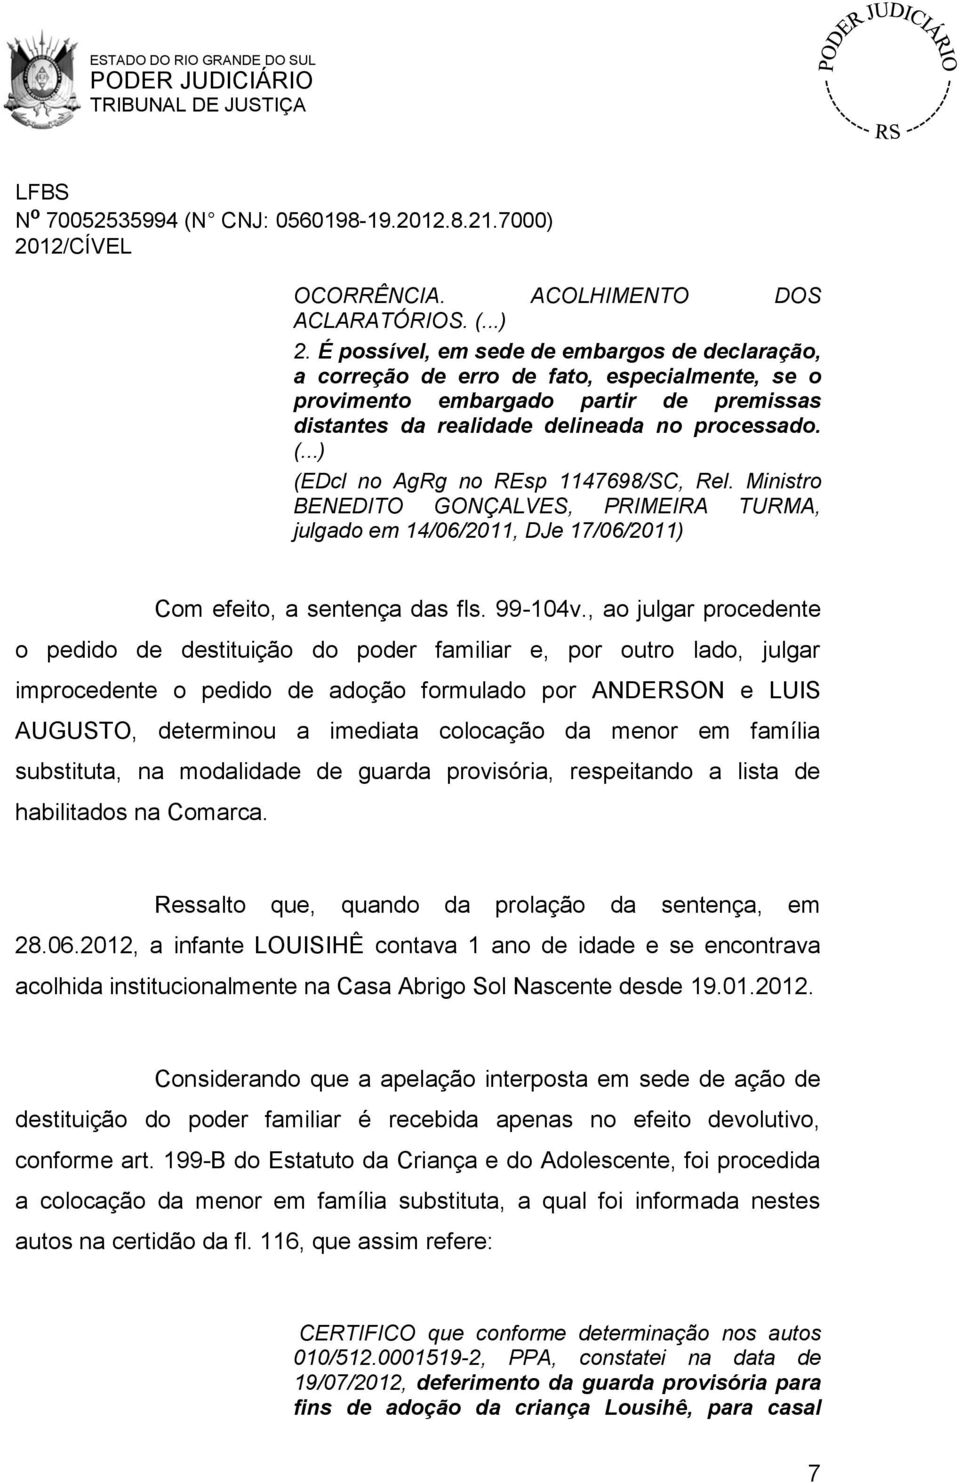 (EDcl no AgRg no REsp 1147698/SC, Rel. Ministro BENEDITO GONÇALVES, PRIMEIRA TURMA, julgado em 14/06/2011, DJe 17/06/2011) Com efeito, a sentença das fls. 99-104v.